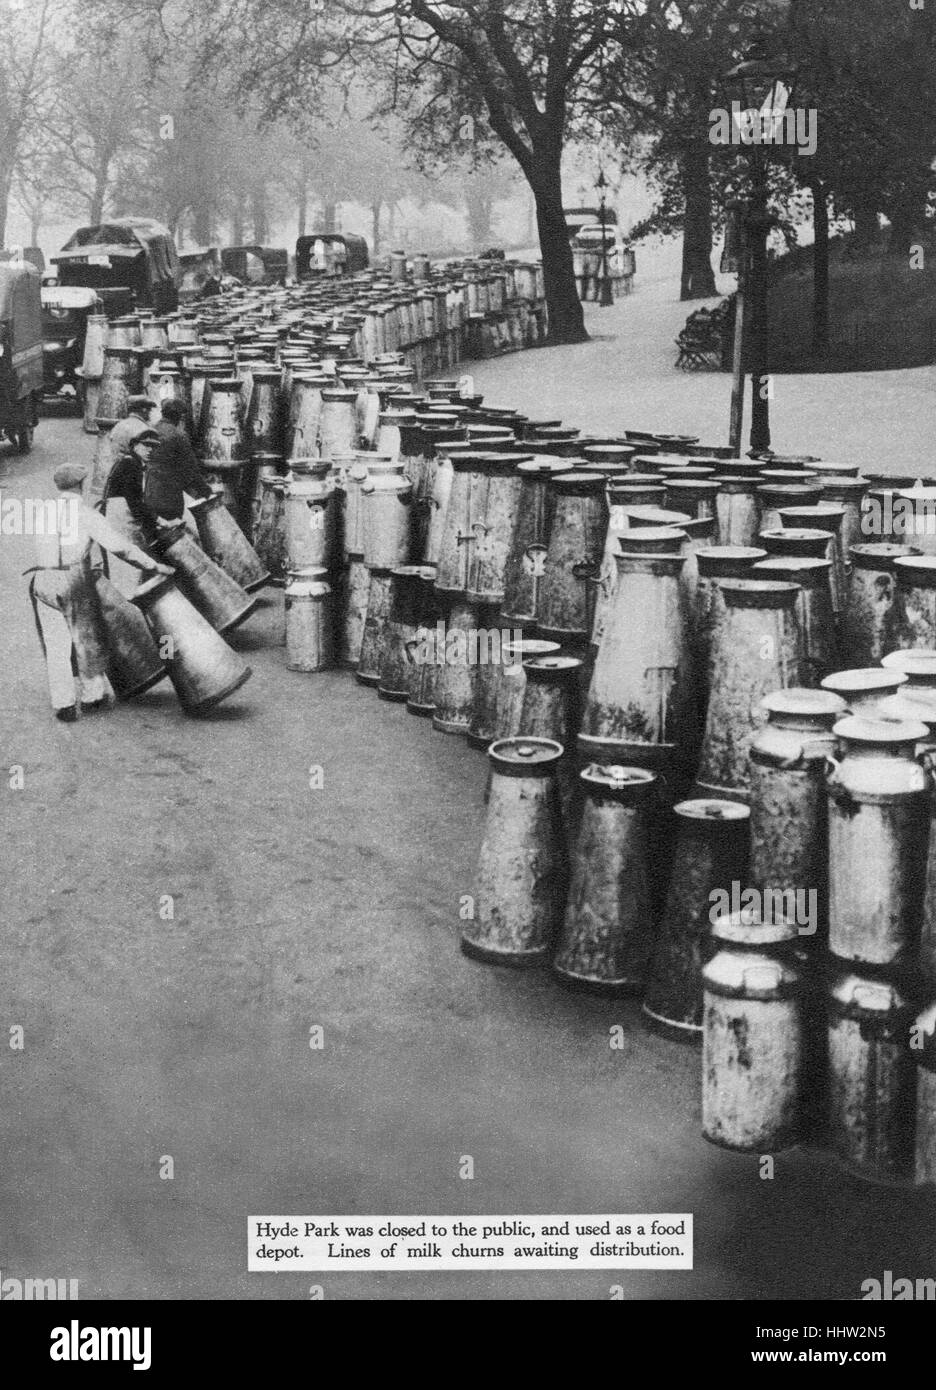 Grève générale de la Trade Union Congress (TUC) en 1926 - Dépôt de lait d'urgence mis en place à Hyde Park, Londres Banque D'Images